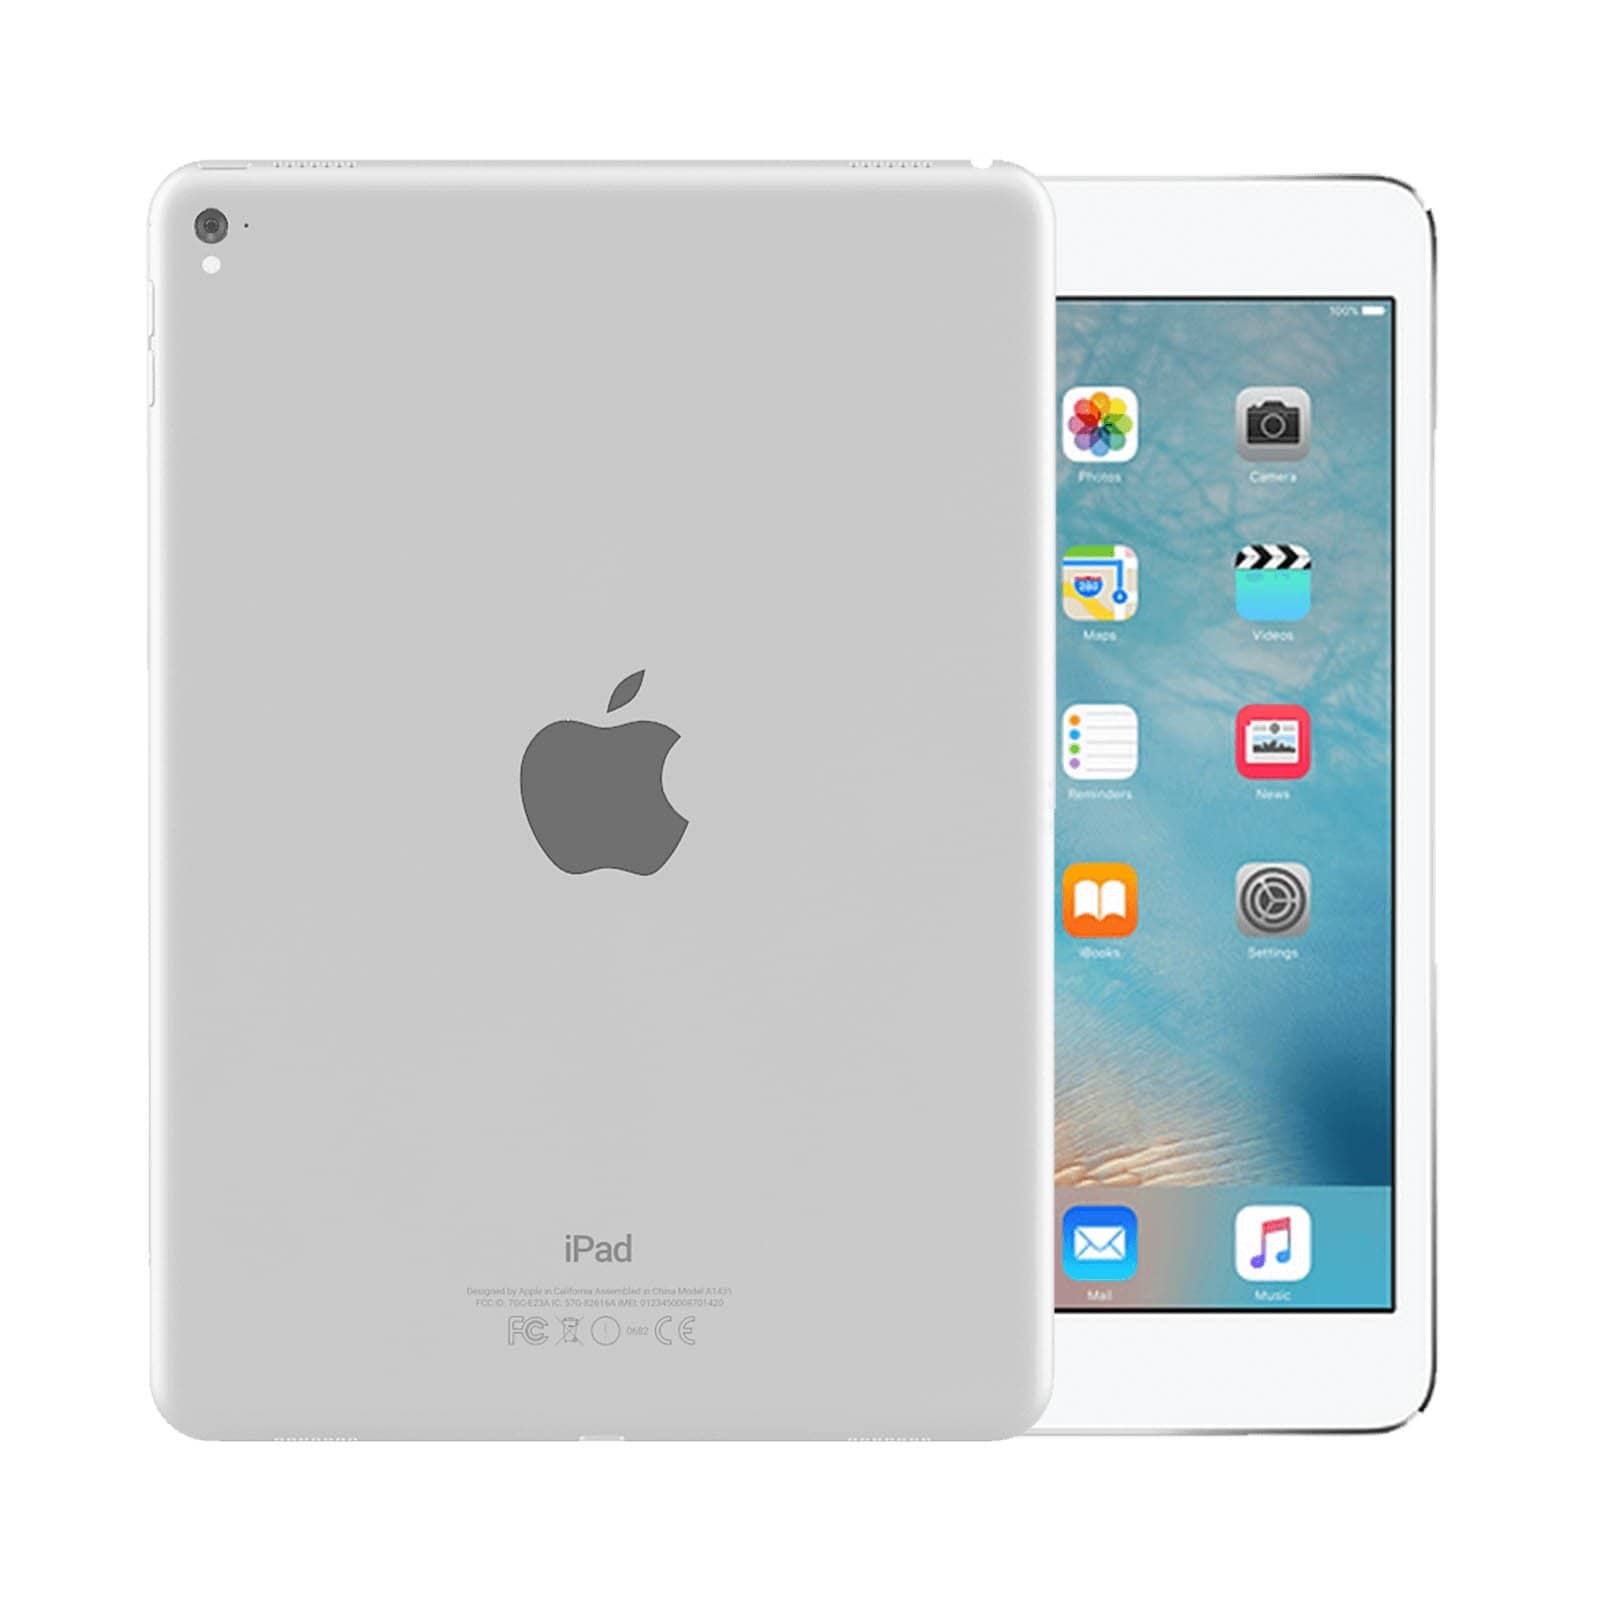 iPad Pro 9.7 Inch 32GB Silver Pristine - WiFi 32GB Silver Pristine